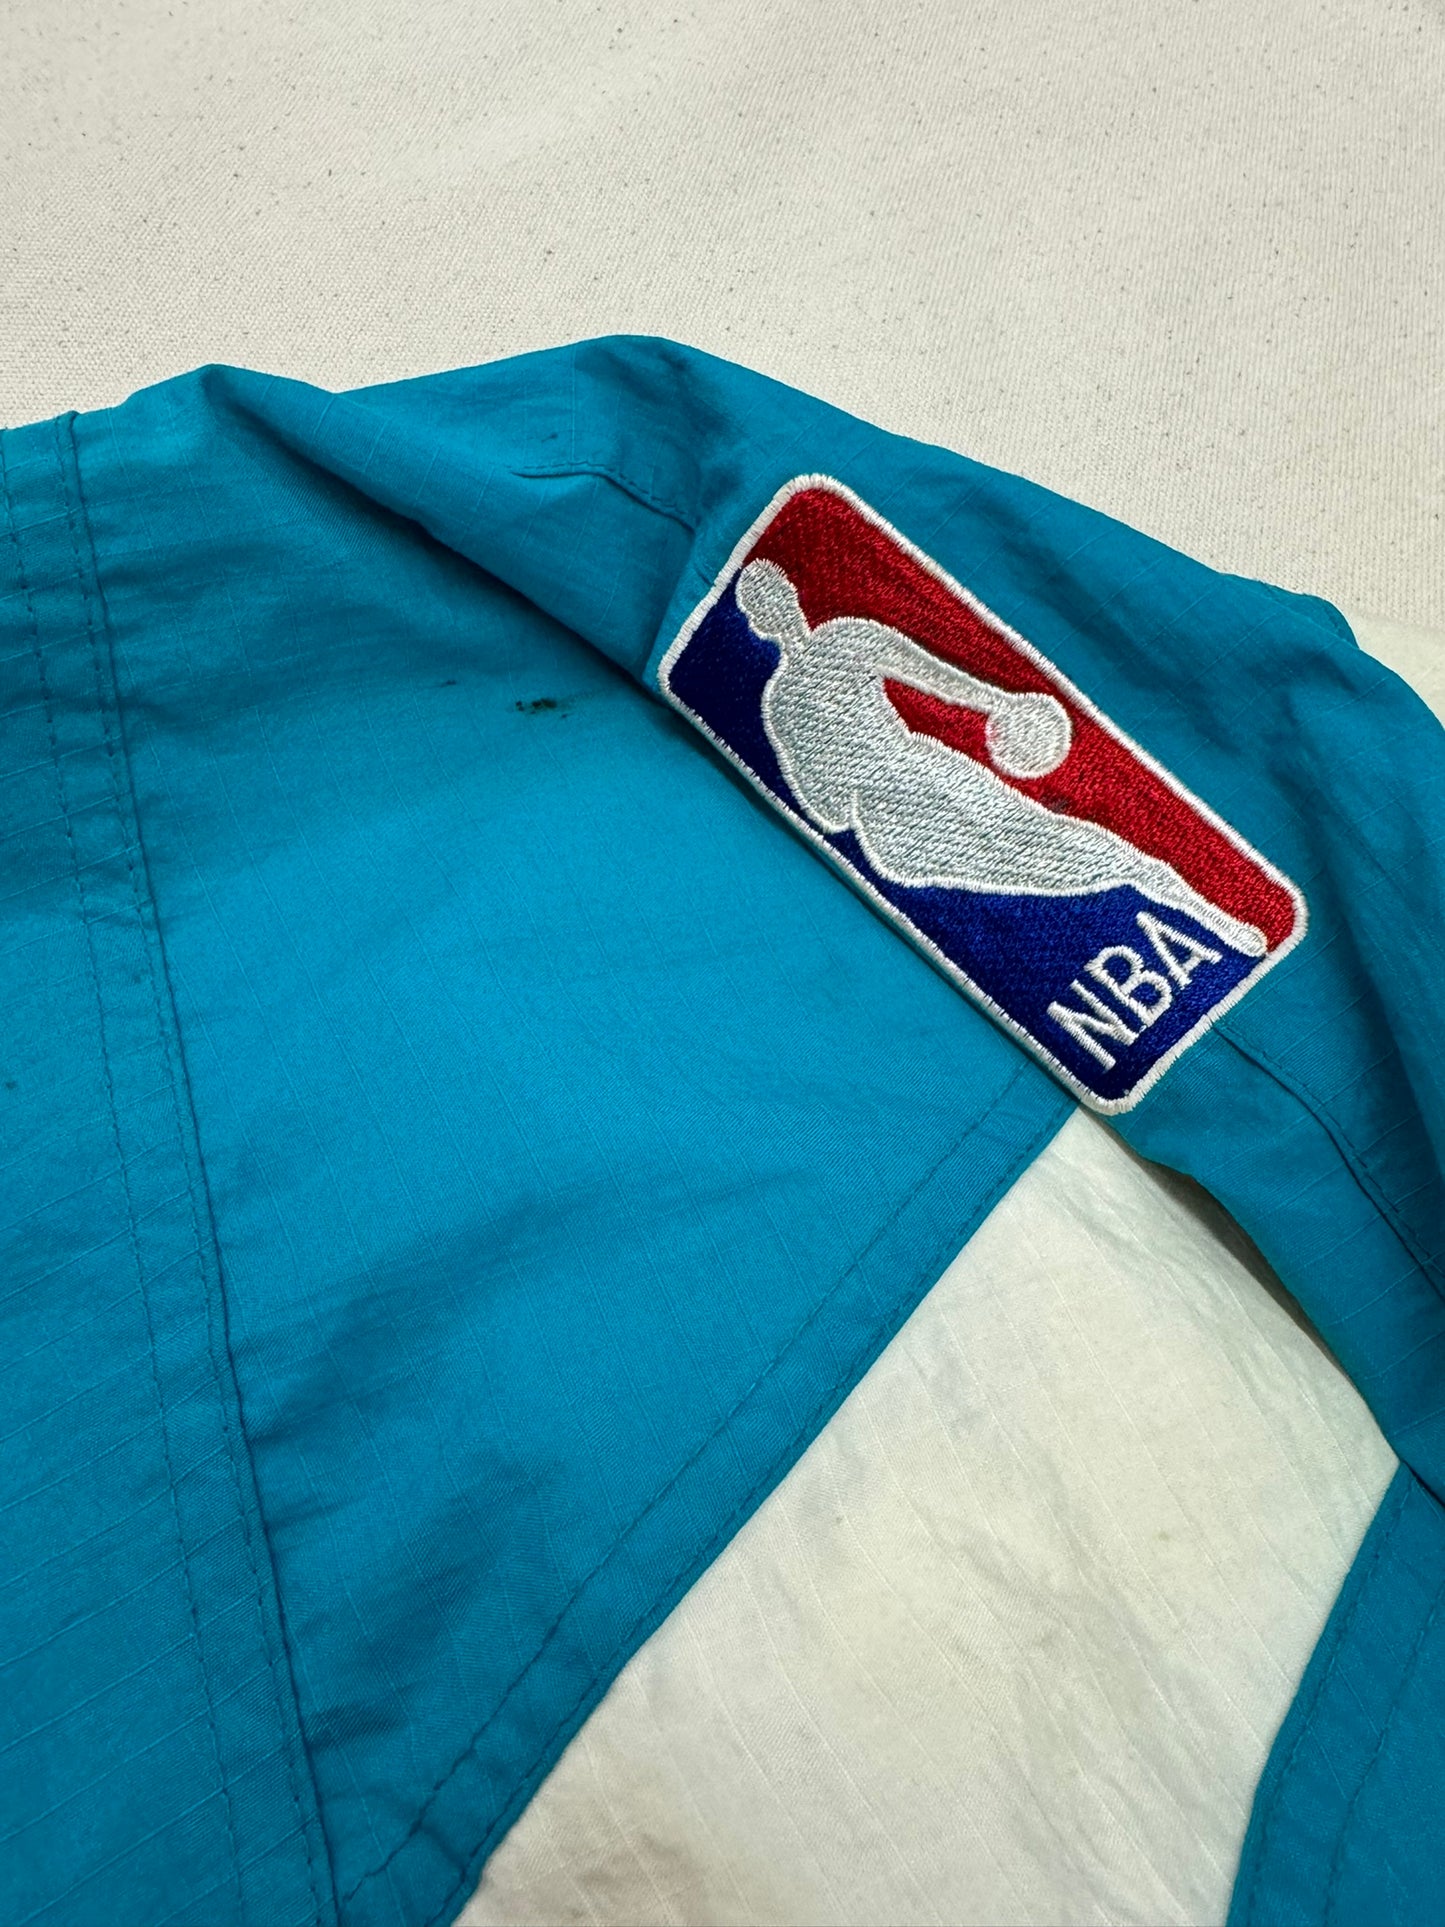 Vintage Charlotte Hornets Starter Jacket Size XL